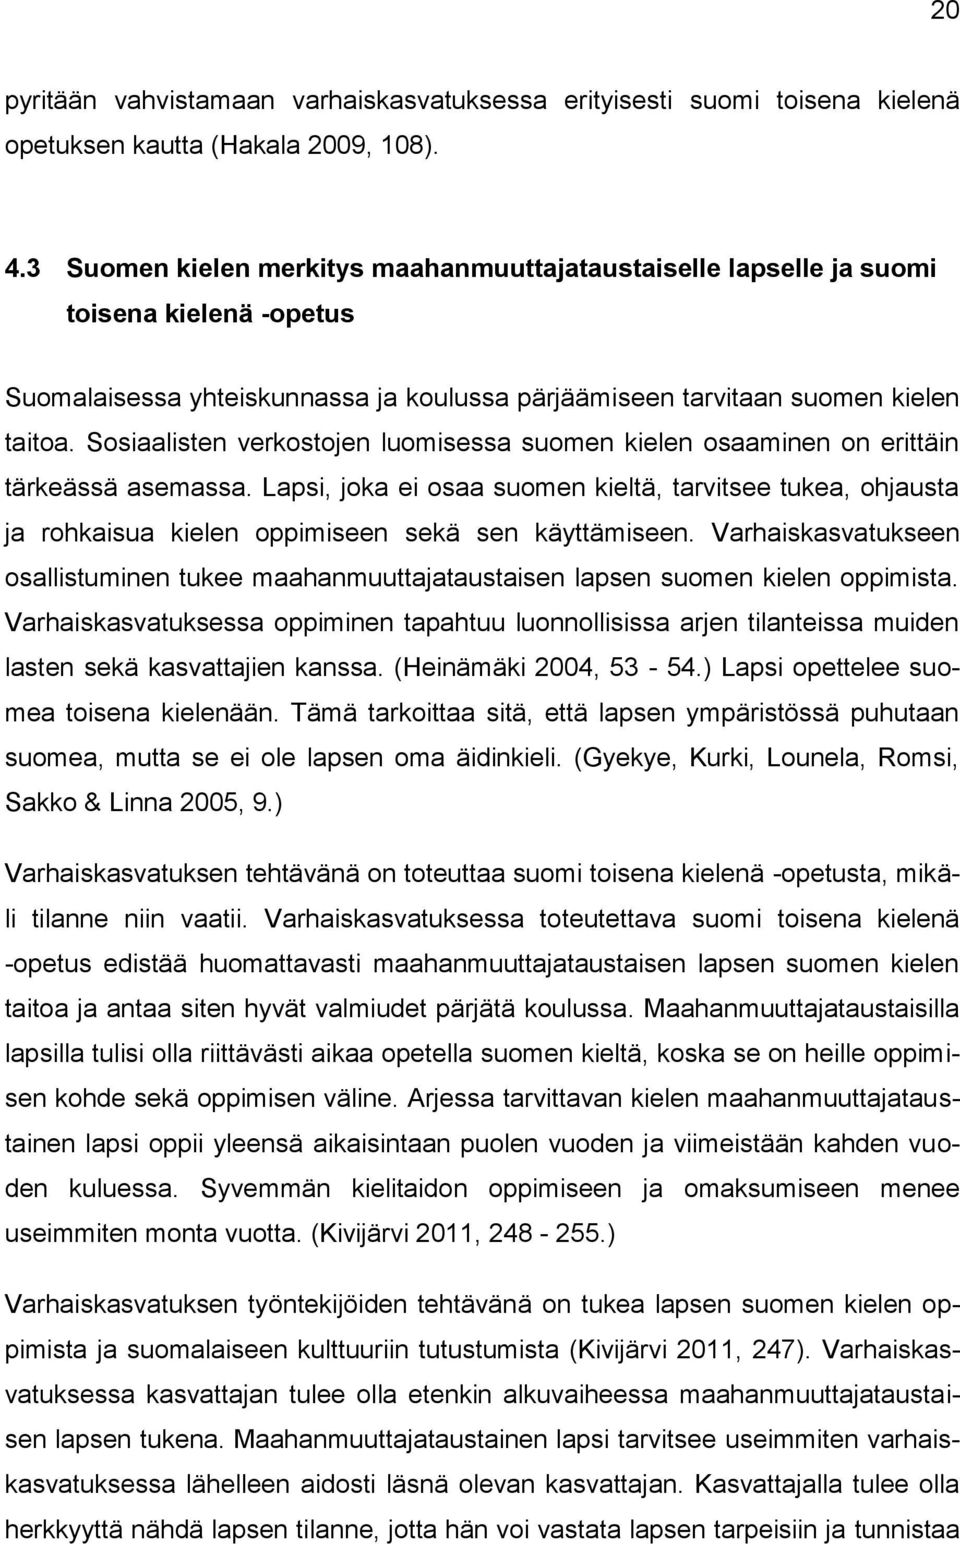 Sosiaalisten verkostojen luomisessa suomen kielen osaaminen on erittäin tärkeässä asemassa.